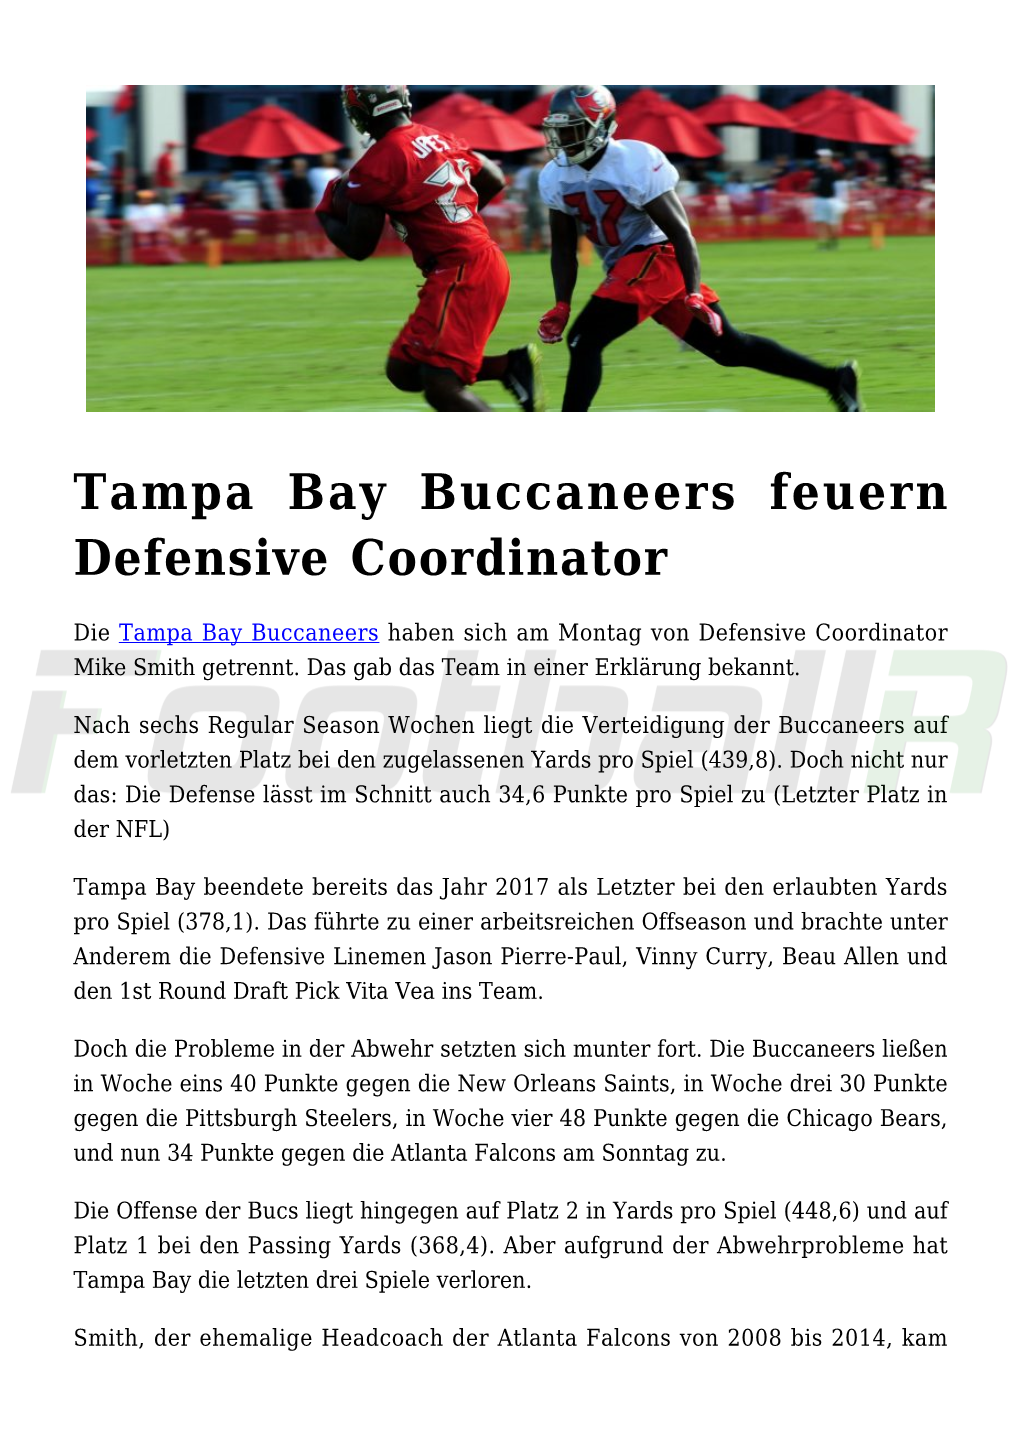 Tampa Bay Buccaneers Feuern Defensive Coordinator